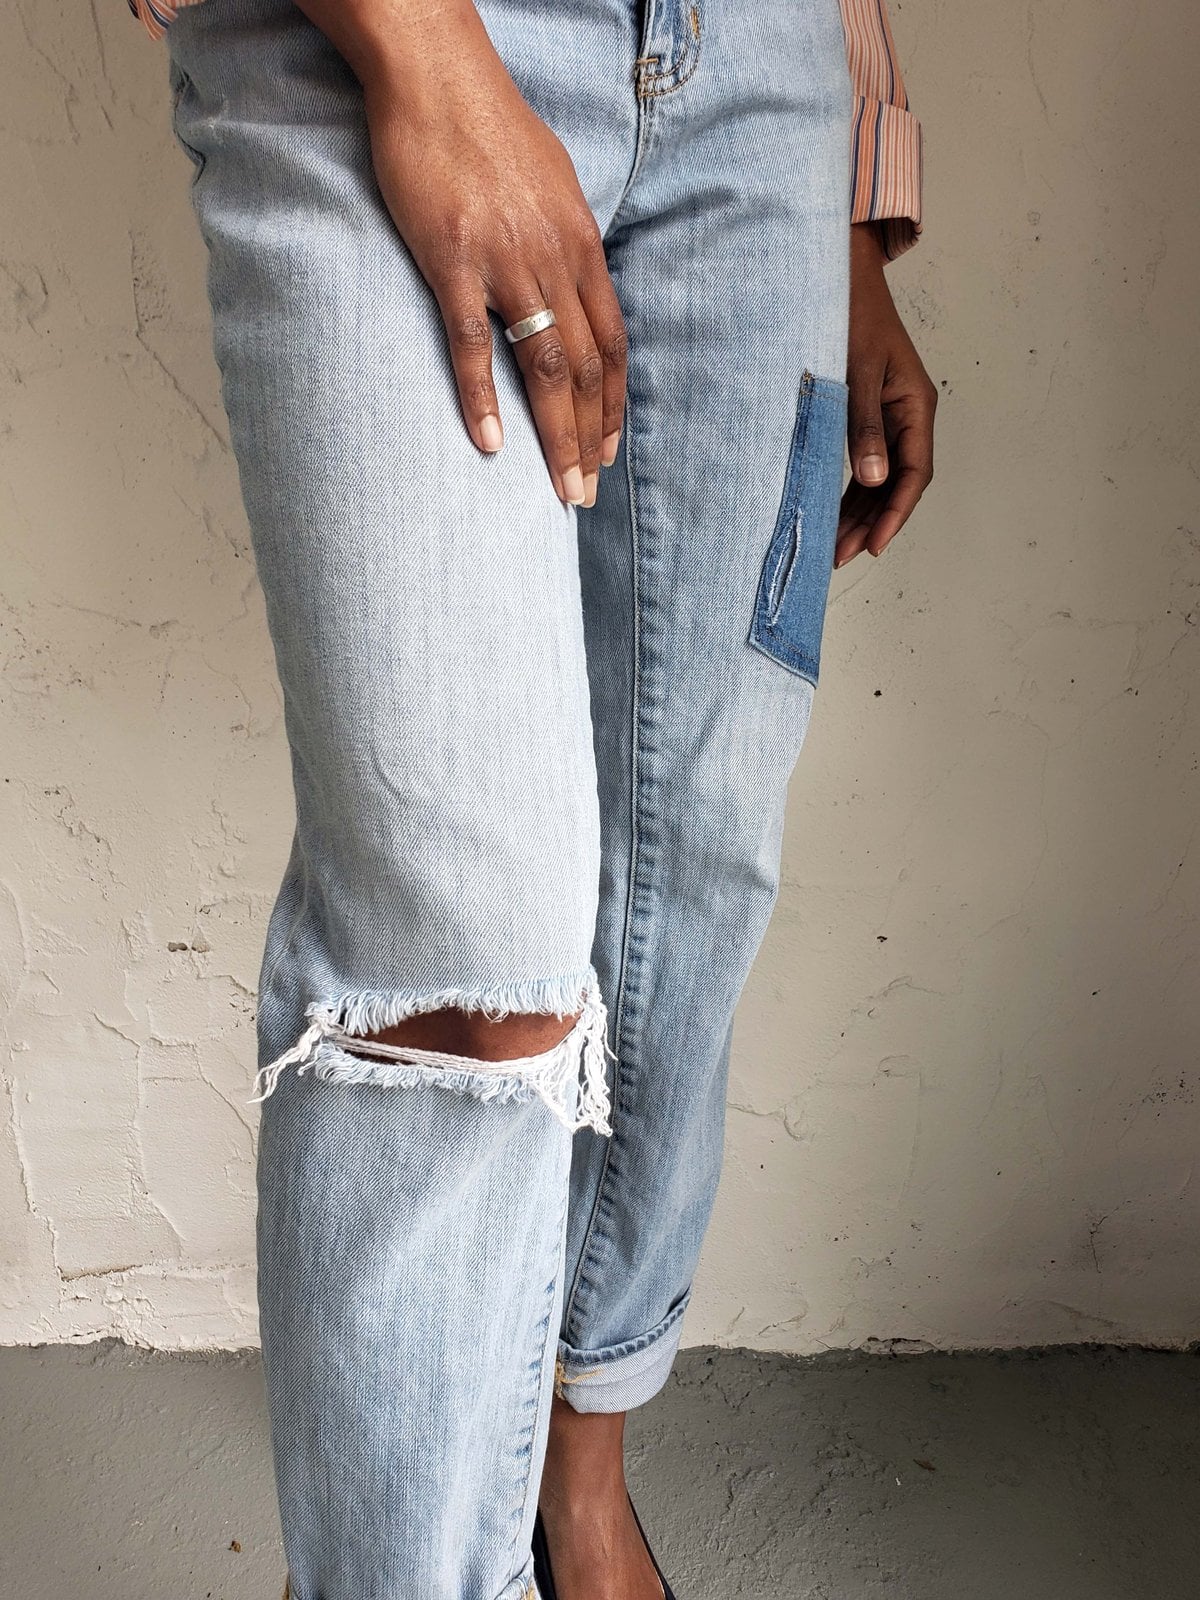 new trending jeans for girls